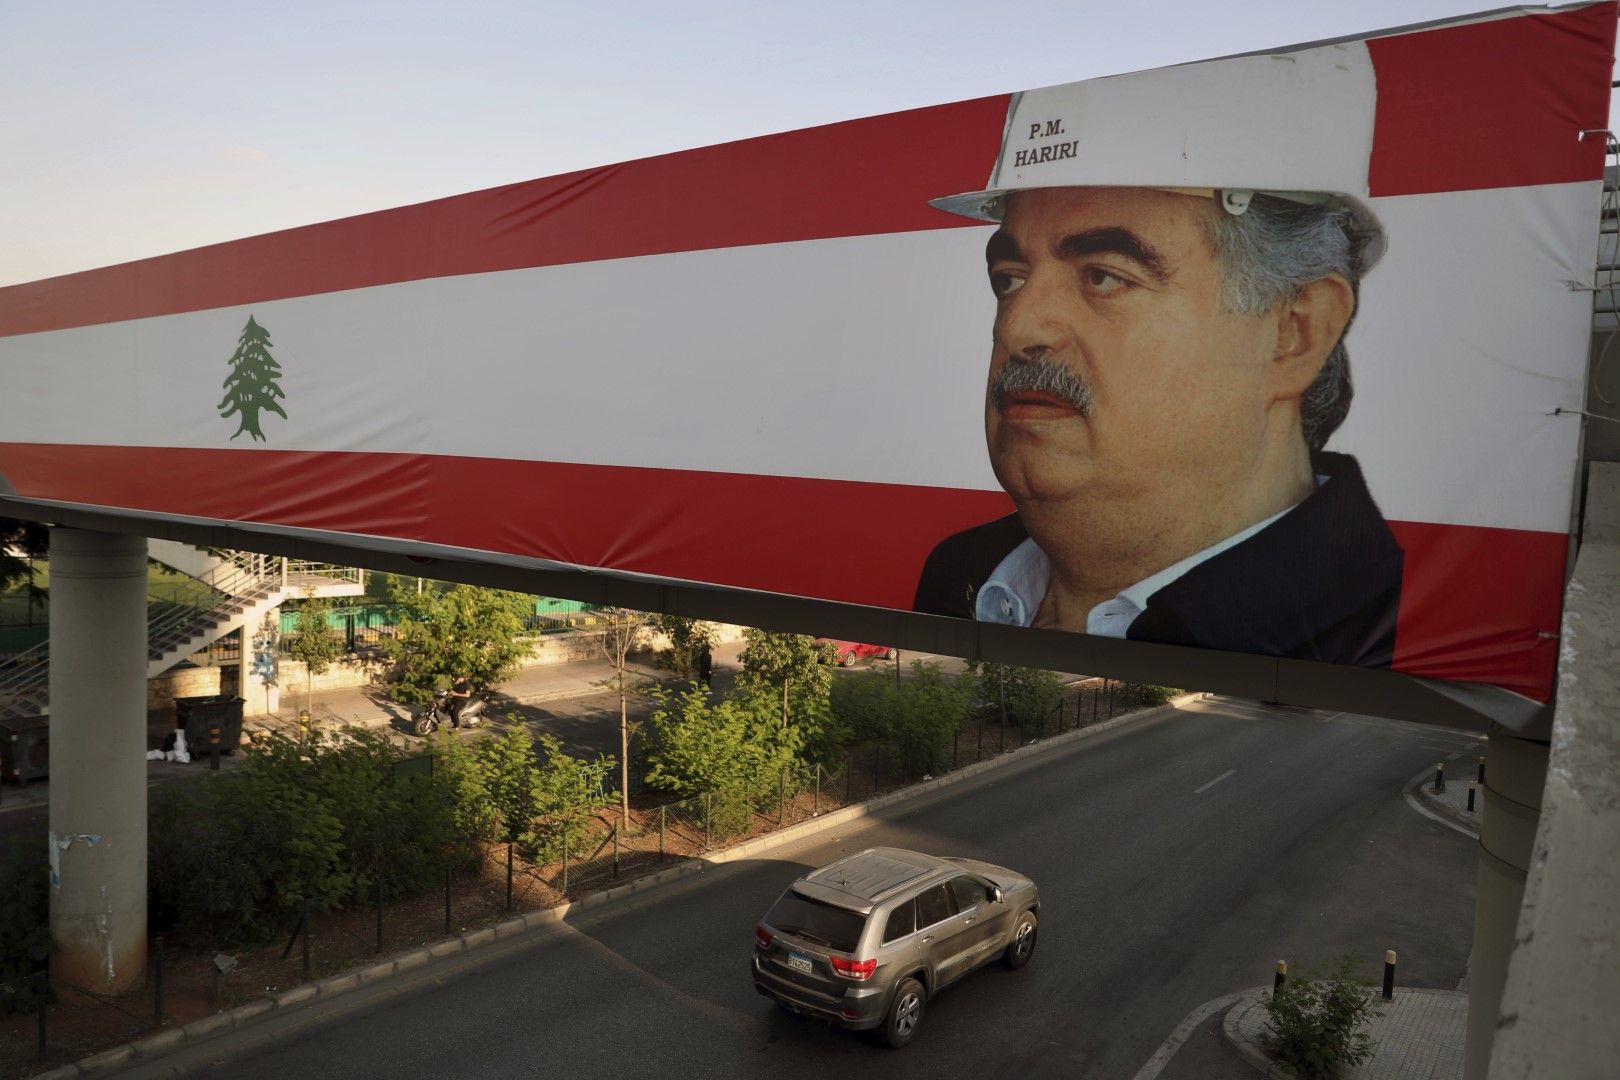 Кола преминава под плакат с лика на Рафик Харири в Бейрут, 18 август